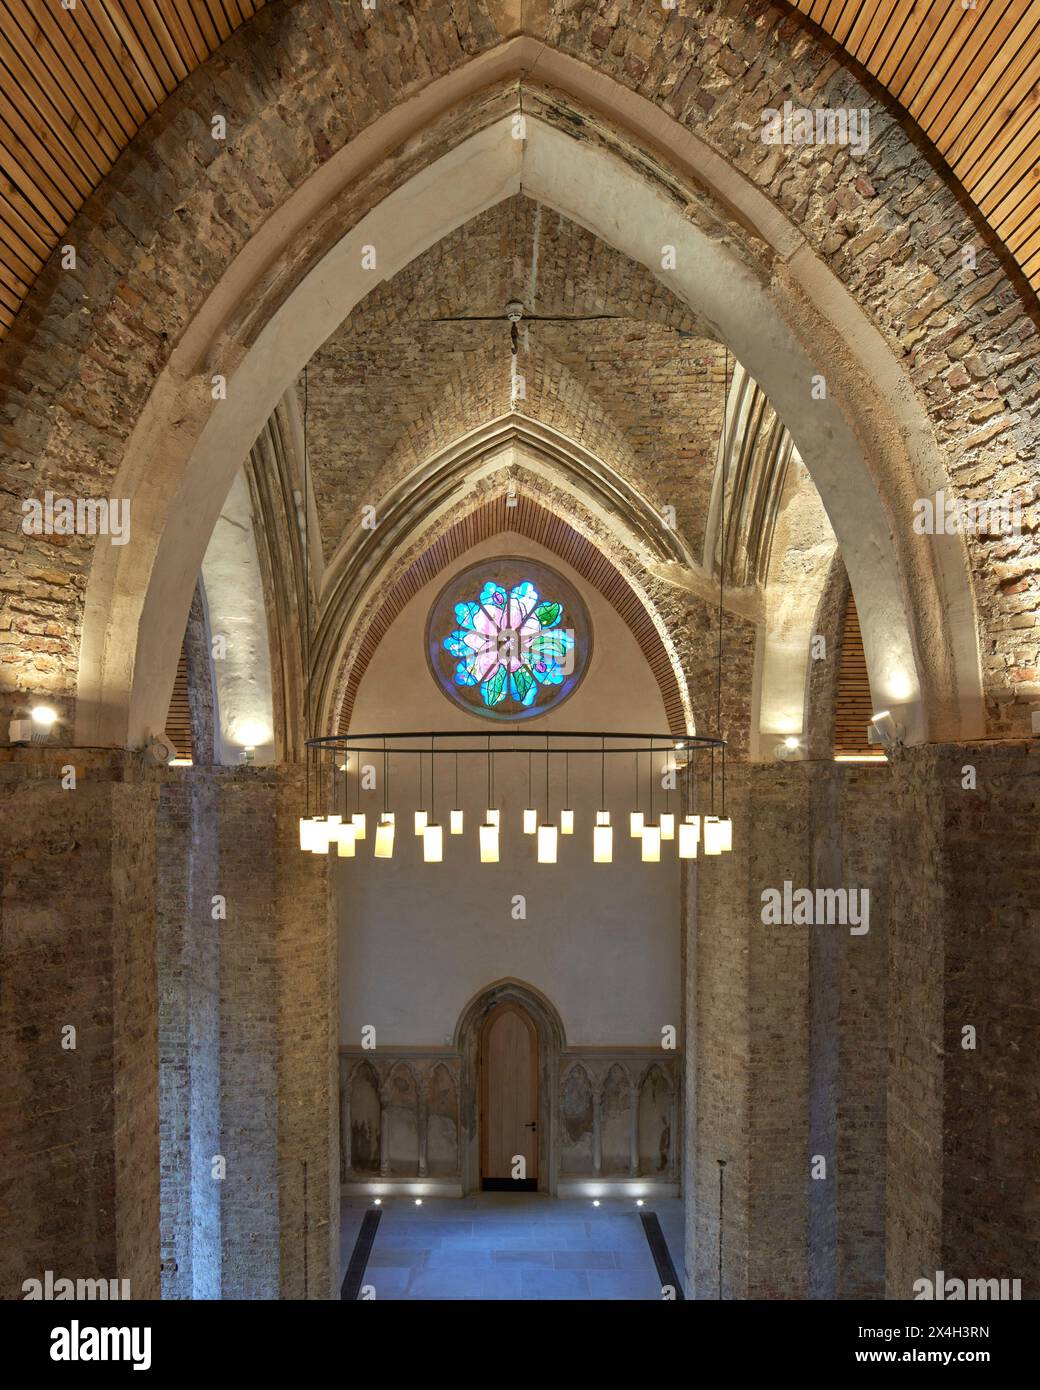 Élévation intérieure avec arcs gothiques et lustre. Abney Park Chapel, Londres, Royaume-Uni. Architecte : Kaner Olette Architects, 2023. Banque D'Images